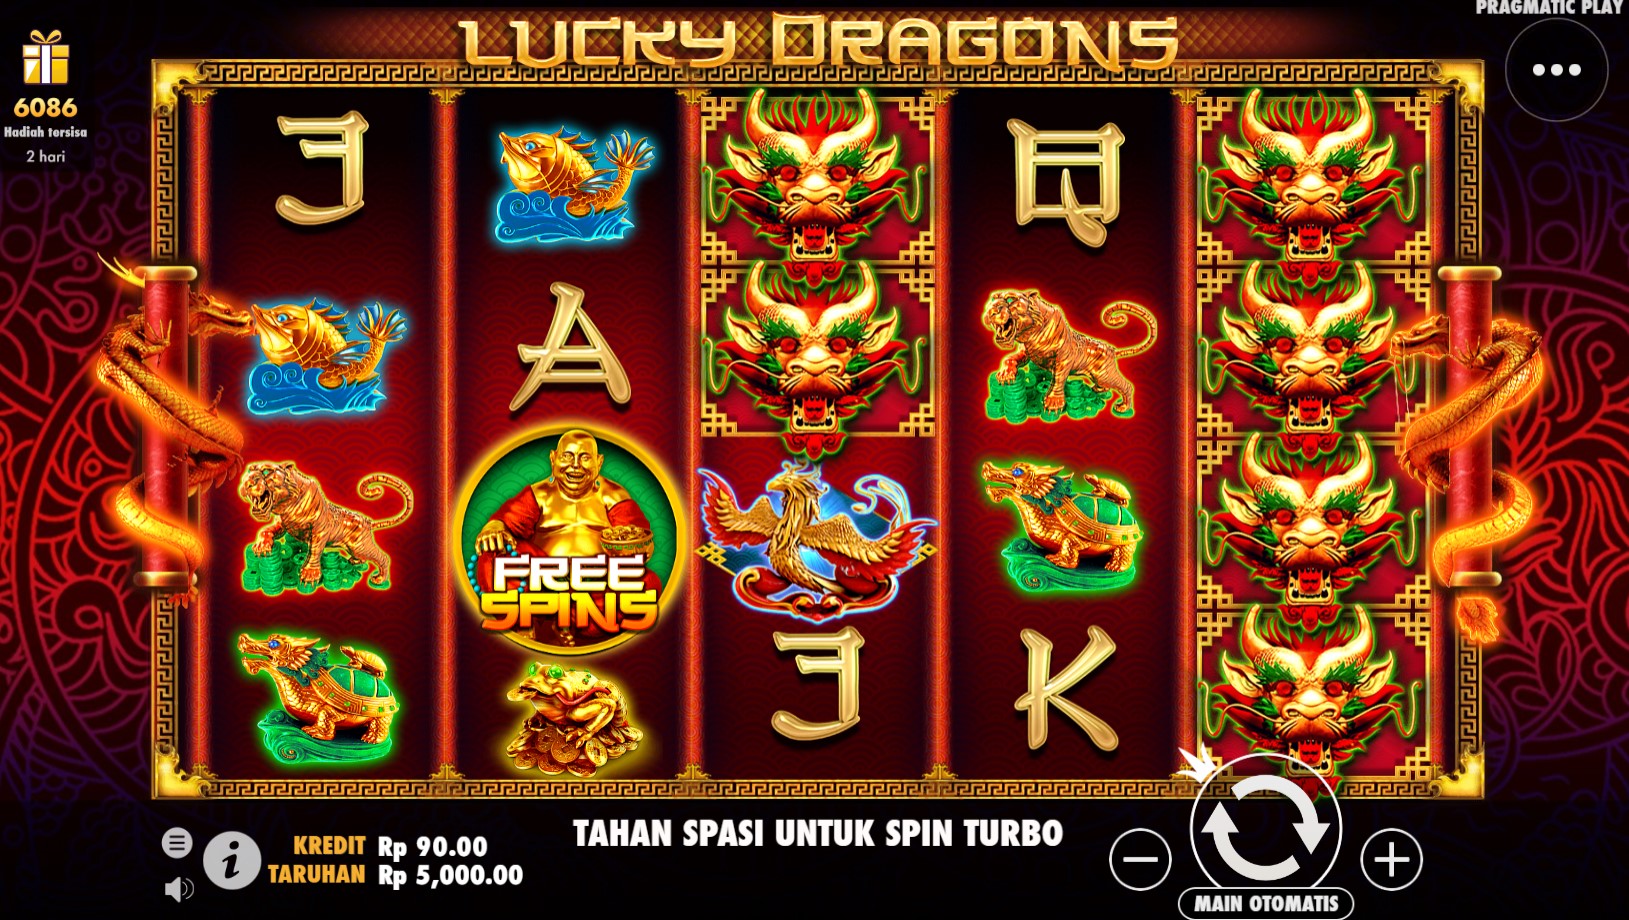 Navigasi Keberuntungan di Antara Naga Panduan Menang Bermain Lucky Dragons Pragmatic Play